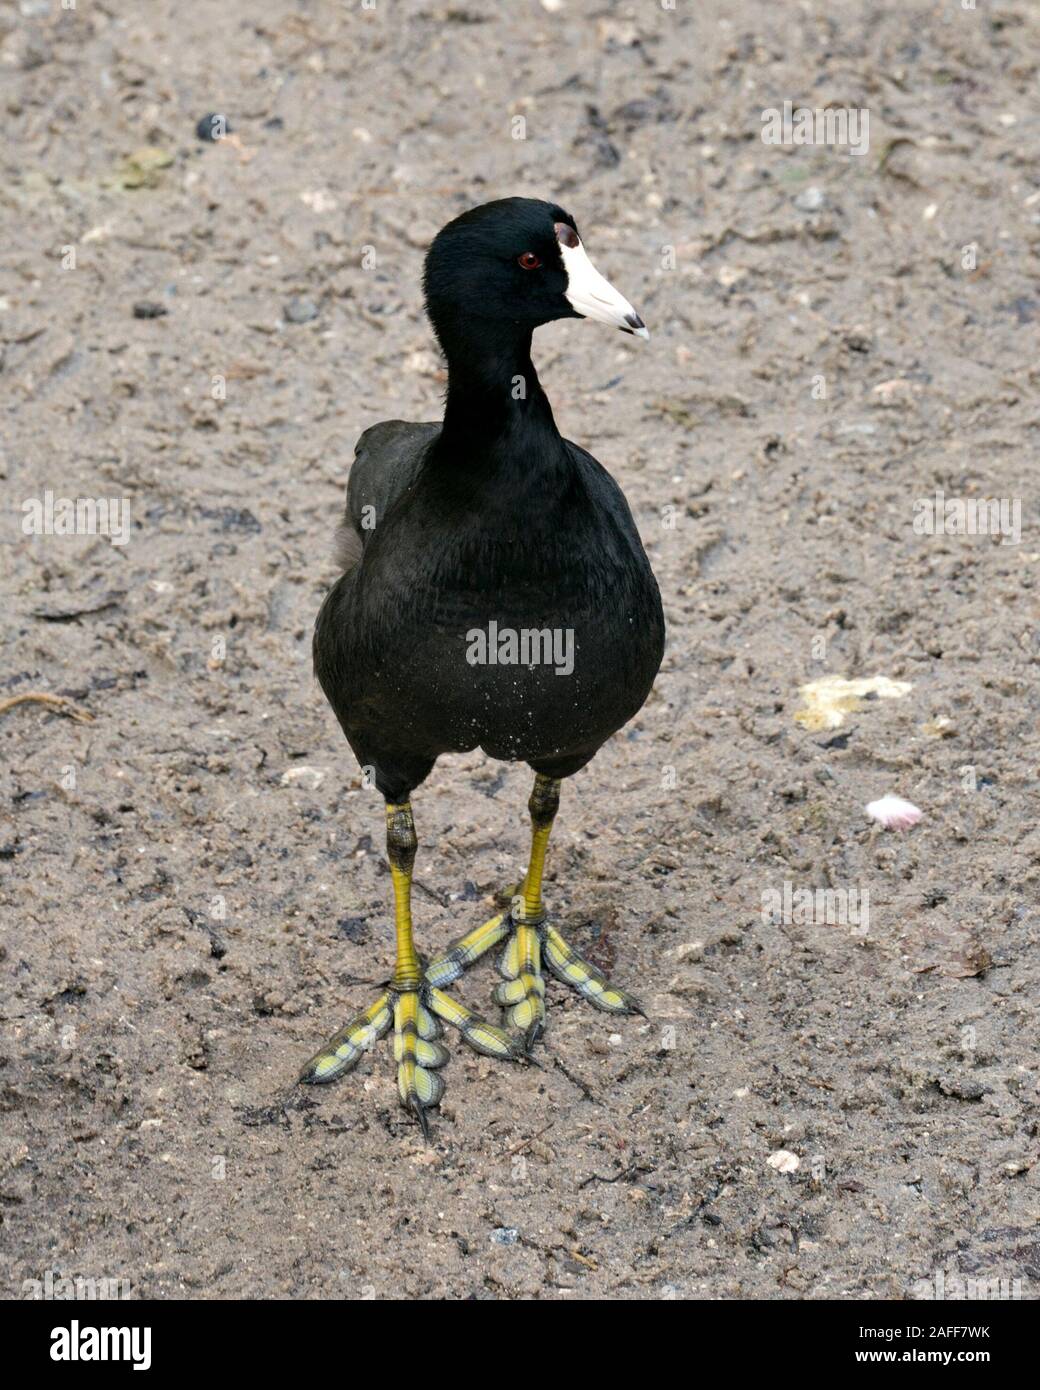 Schwarz Scoter oder Amerikanischen Scoter Vogel ganz nah am Boden, schwarzes Gefieder, Körper, Kopf, Augen, Schnabel, grüne Füße und in seiner Umgebung und surro Stockfoto